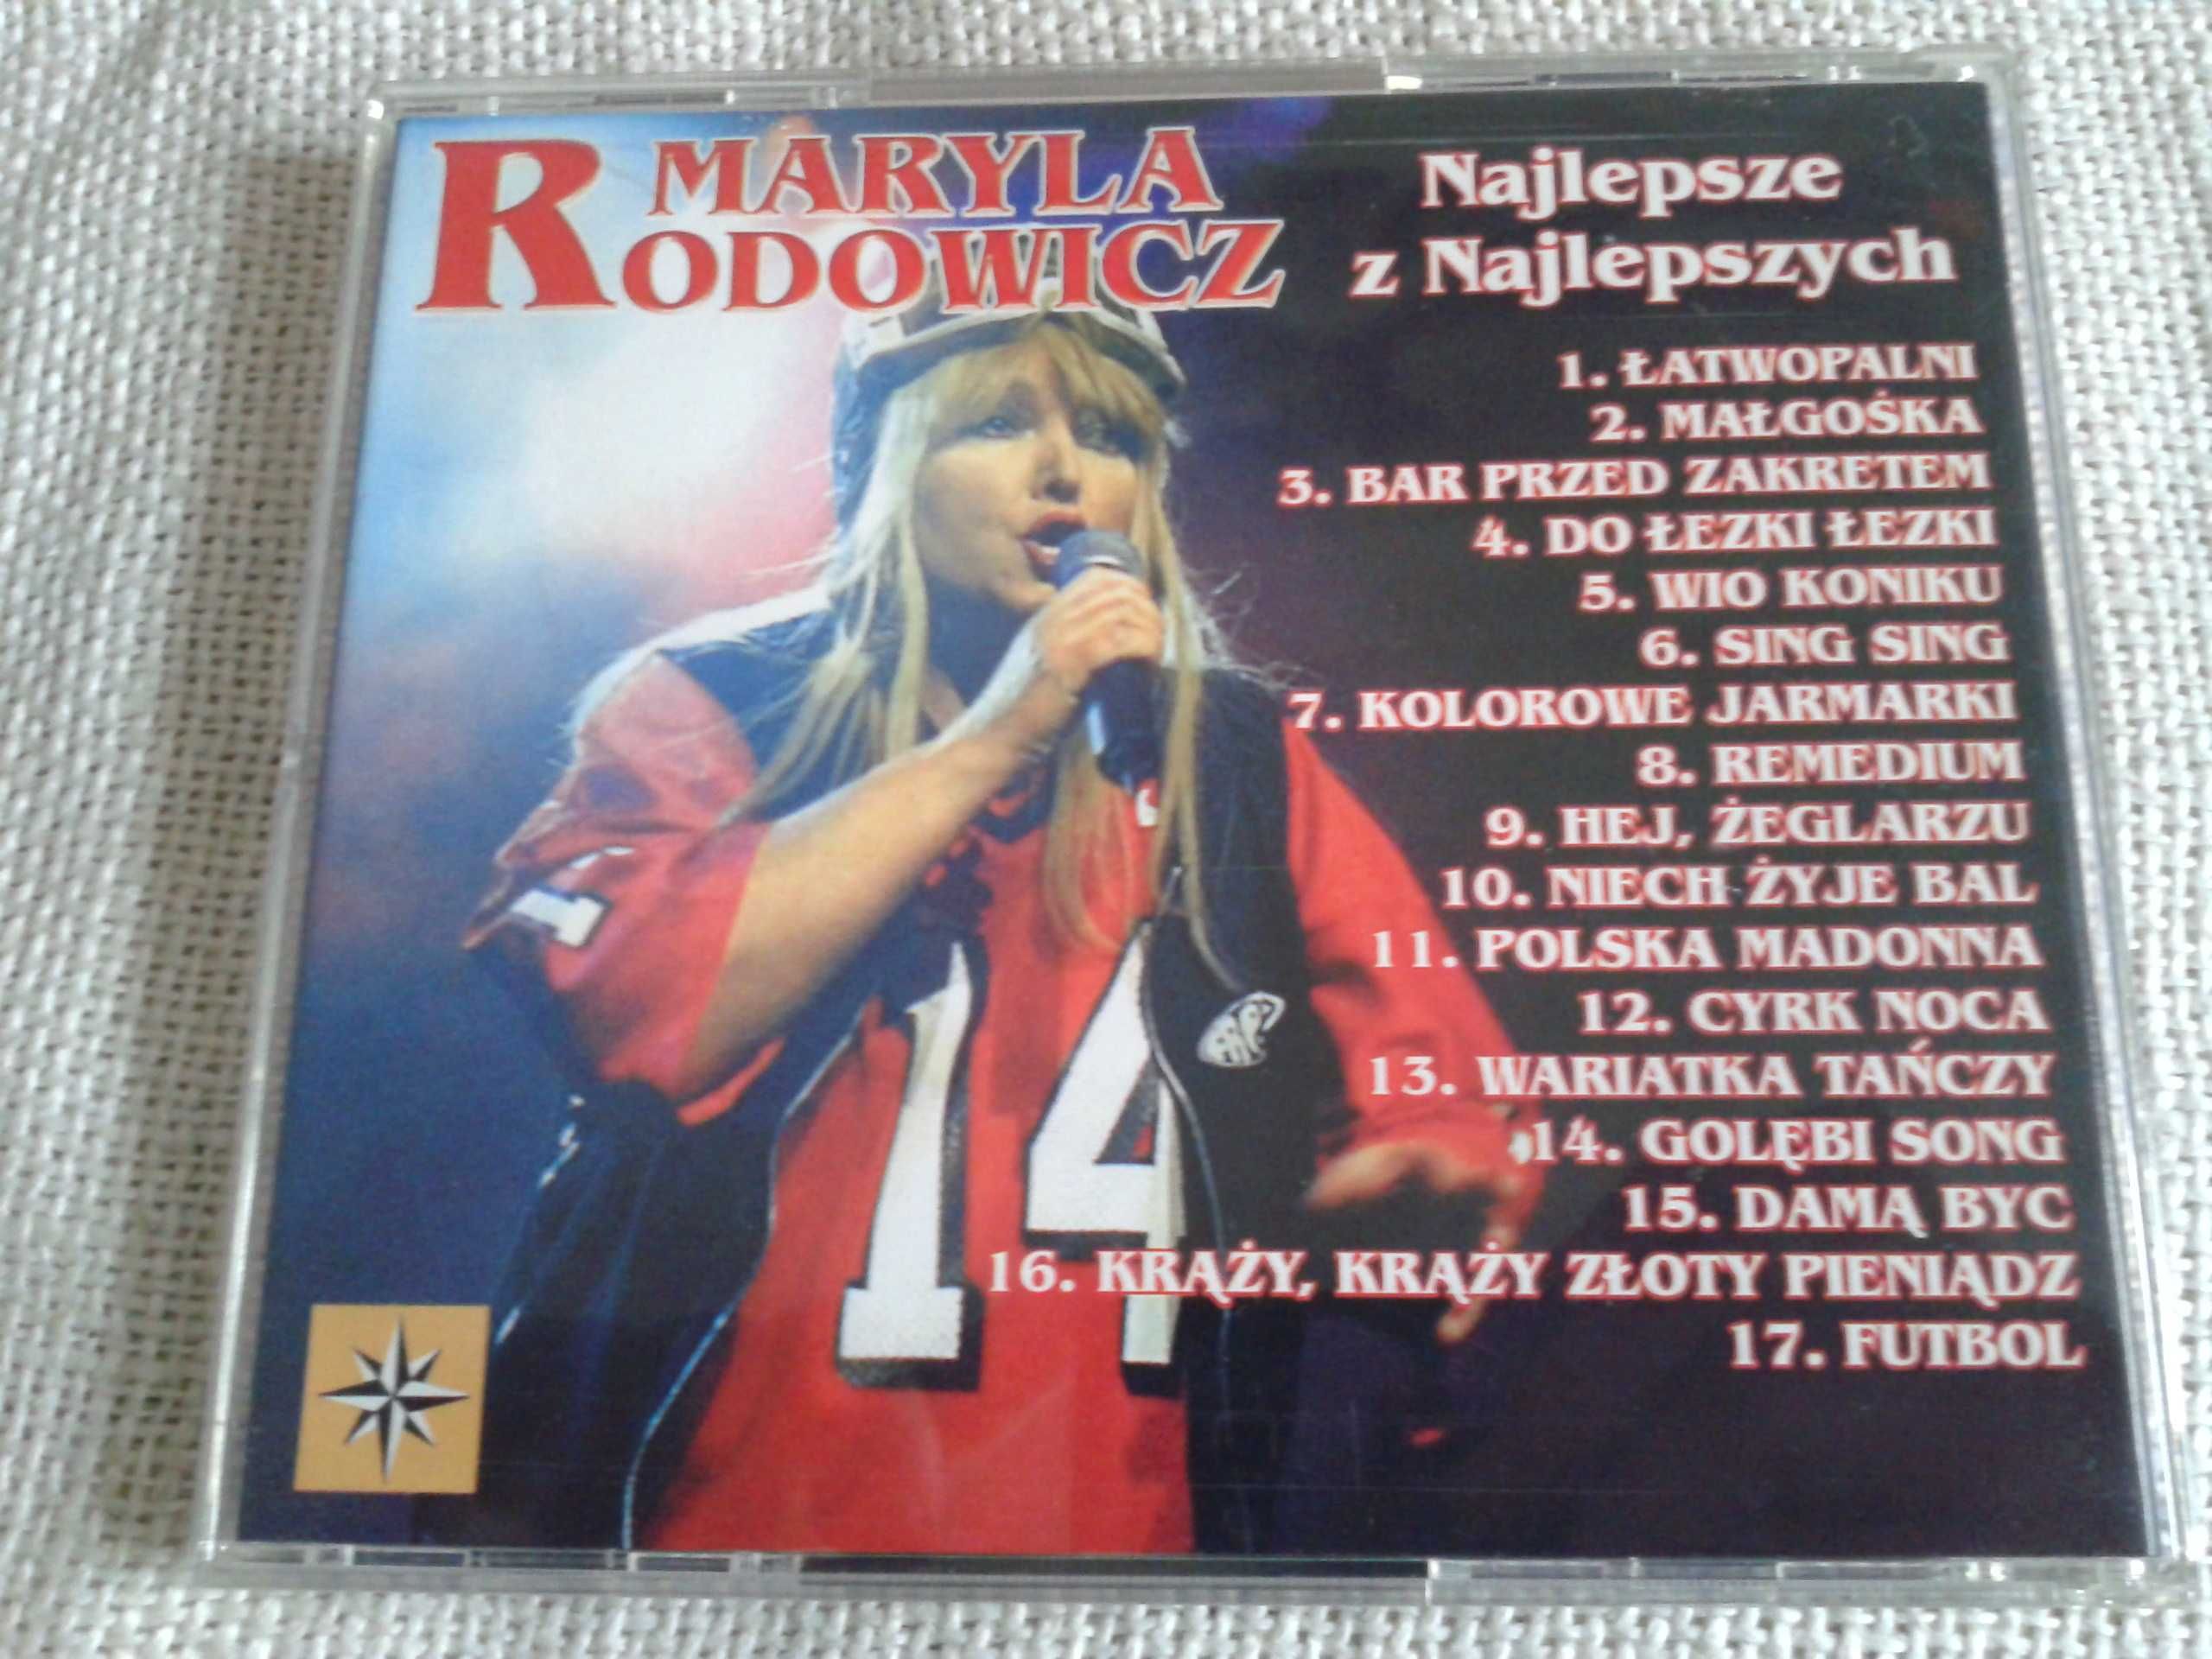 Maryla Rodowicz - Najlepsze z najlepszych  CD